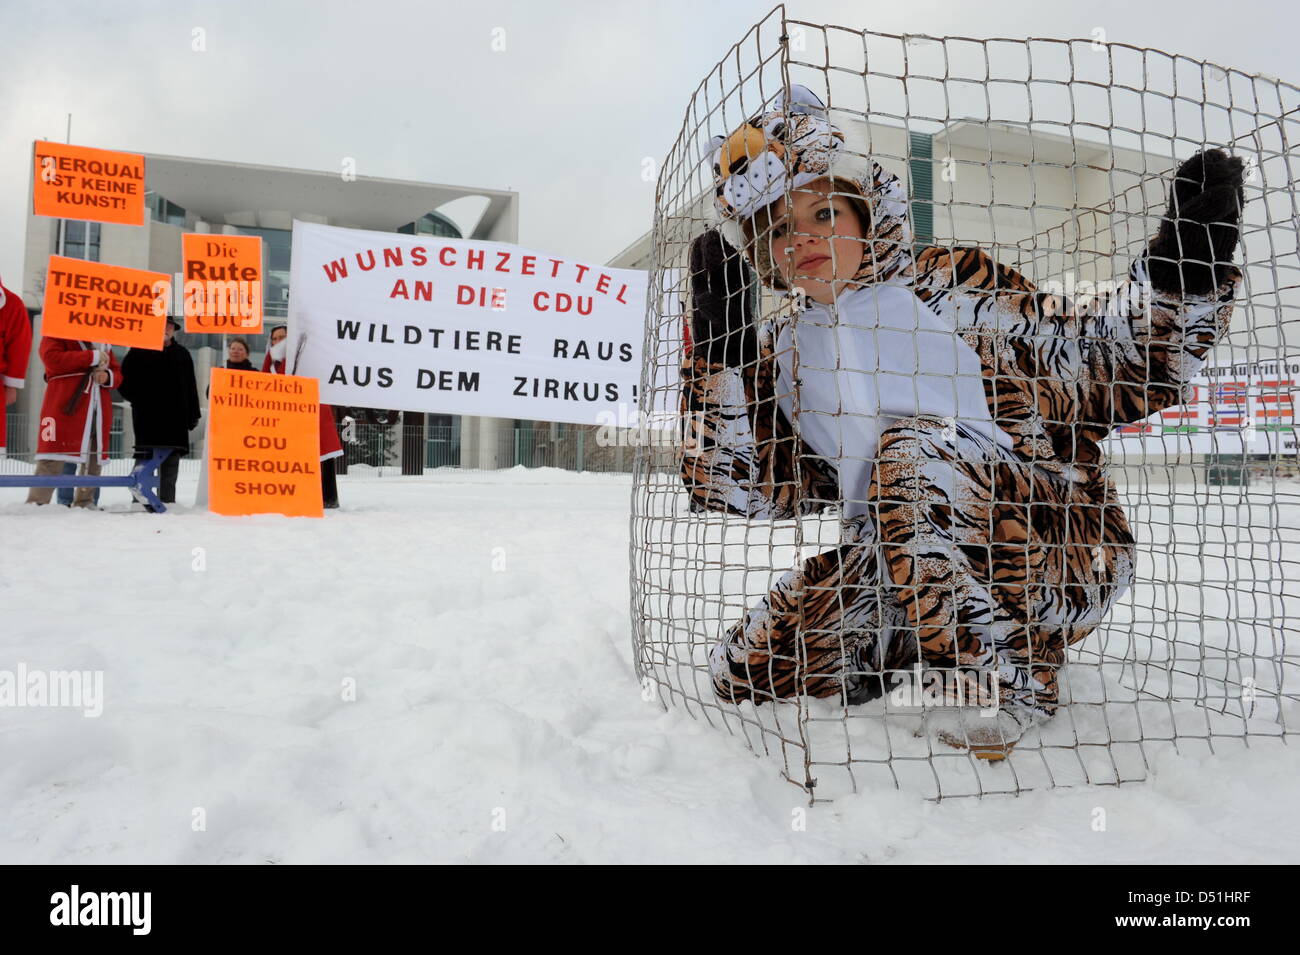 Un animale attivista per i diritti si siede in una gabbia di fronte al Chancelloery a Berlino, Germania, 16 dicembre 2010. L'azione è finalizzata a protestare contro gli animali selvatici vengono mantenuti in un circo. Foto: Tim Brakemeier Foto Stock